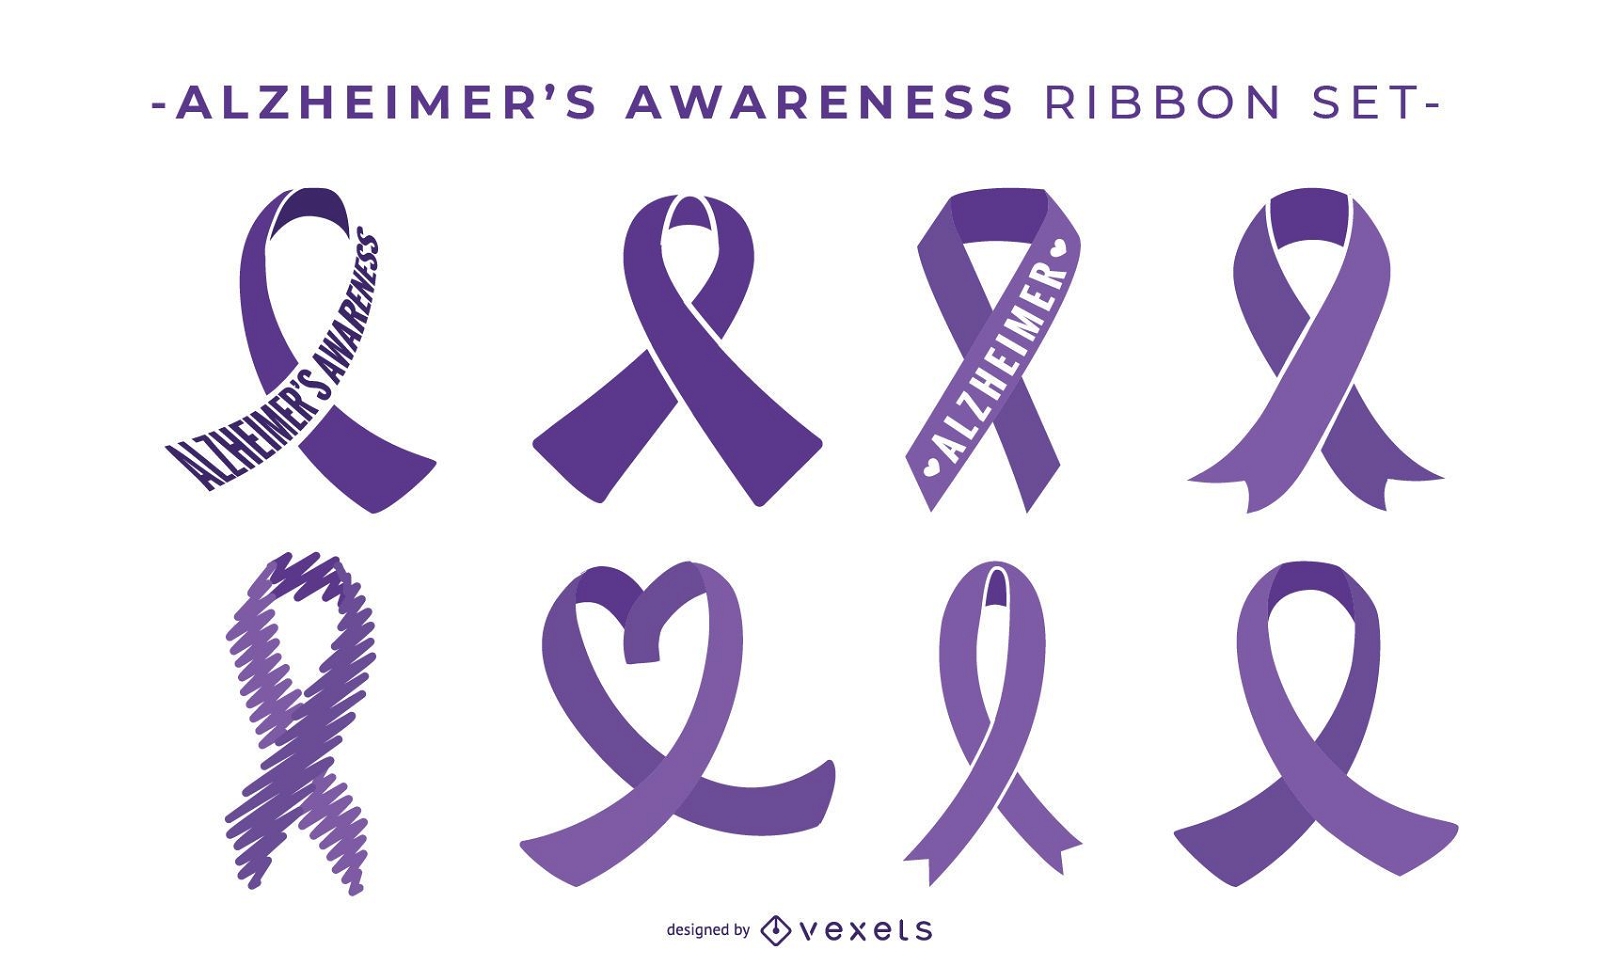 Alzheimer's awareness ribbon set